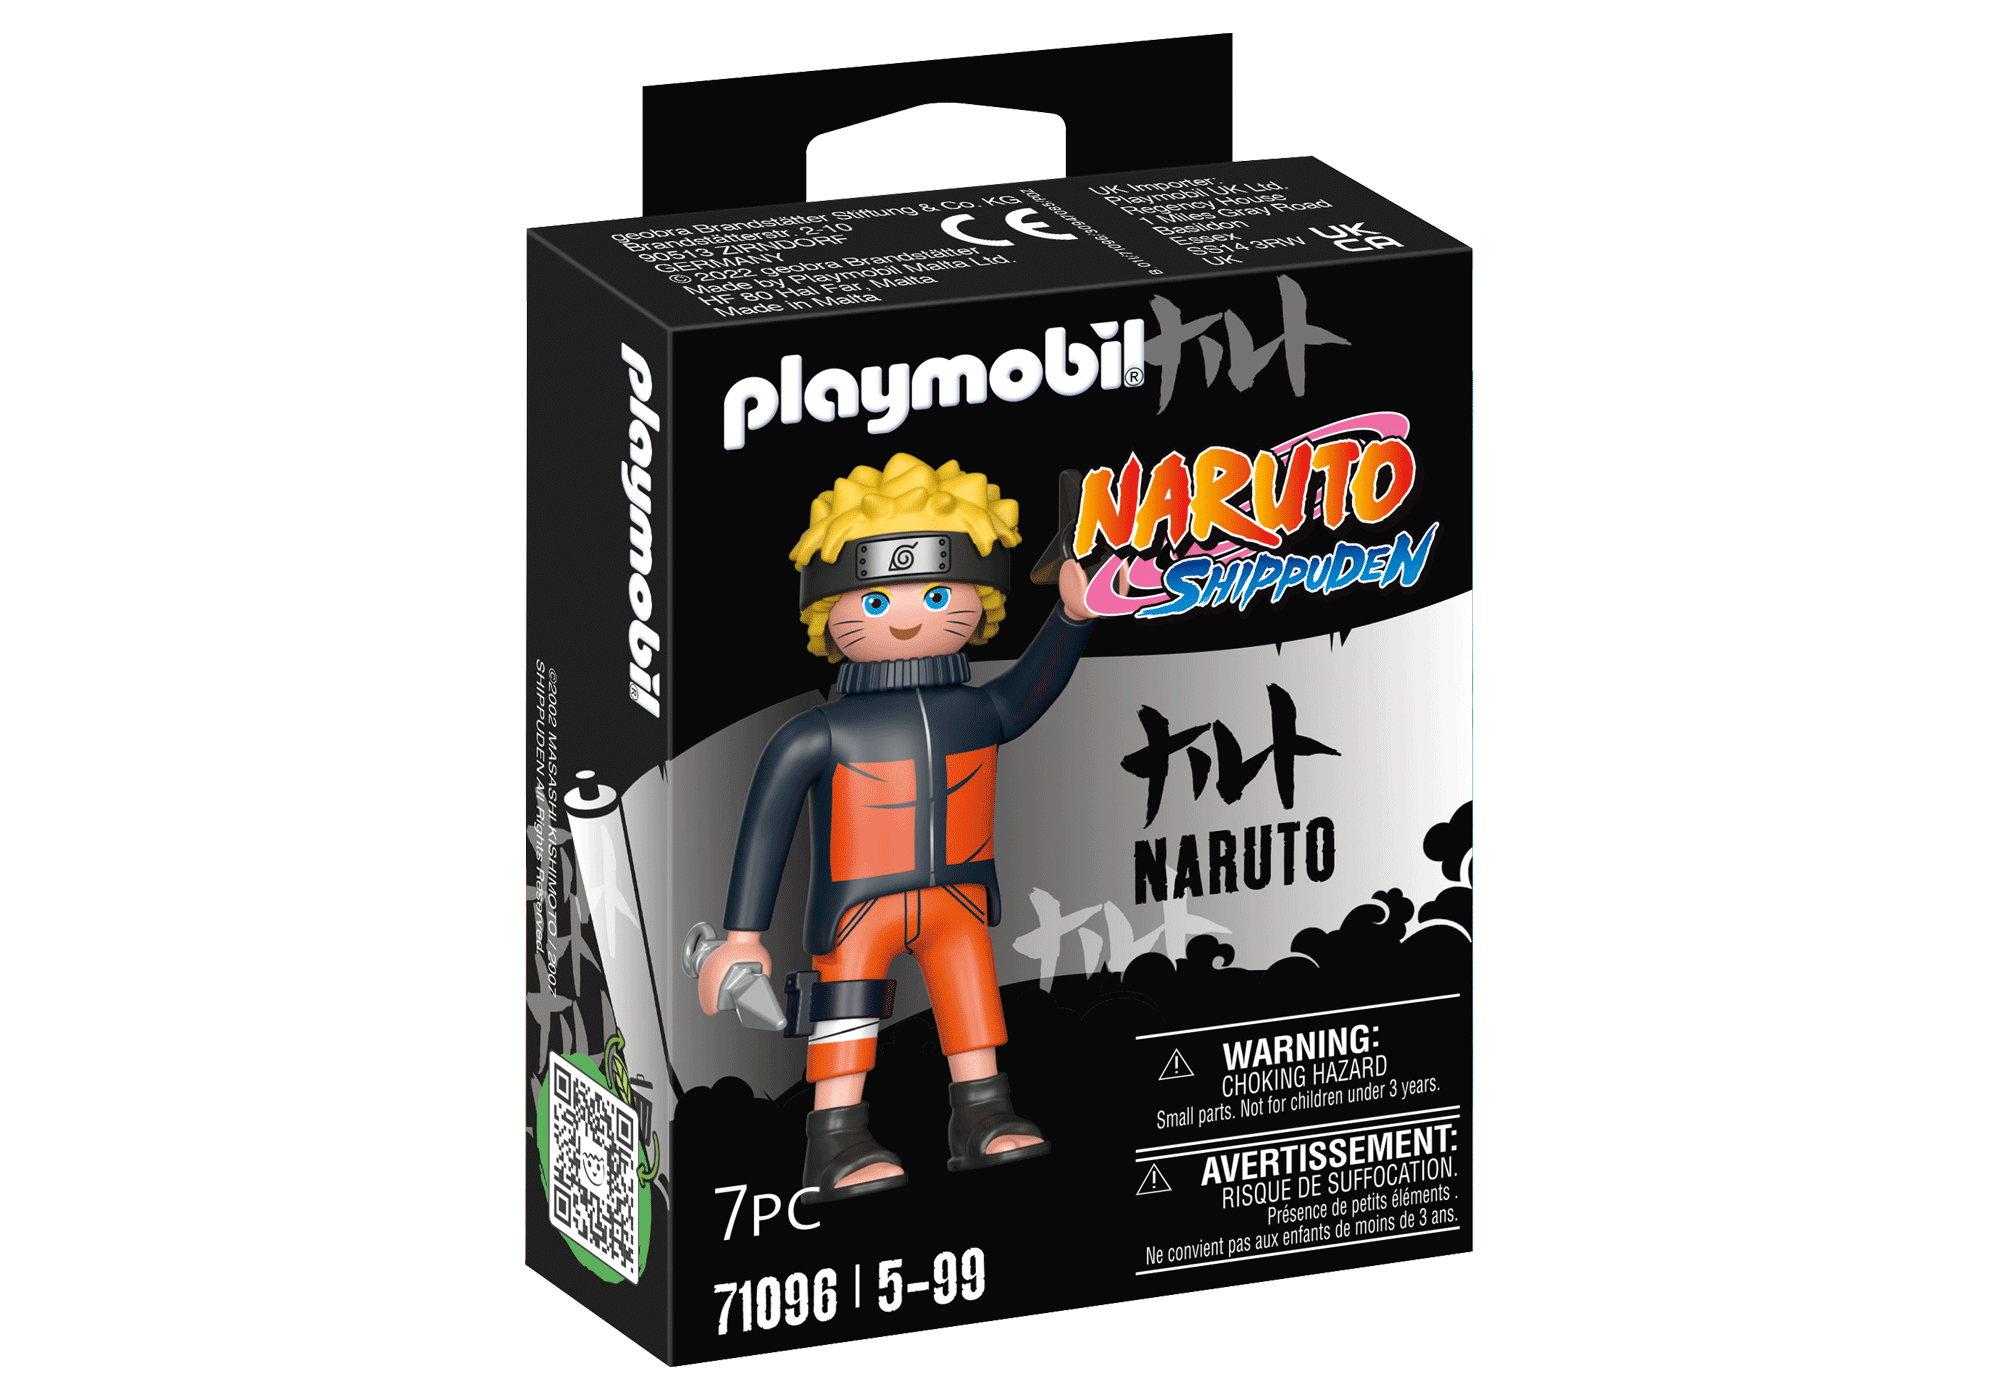 Compre Playmobil - Naruto Uzumaki - Naruto Shippuden - 71096 aqui